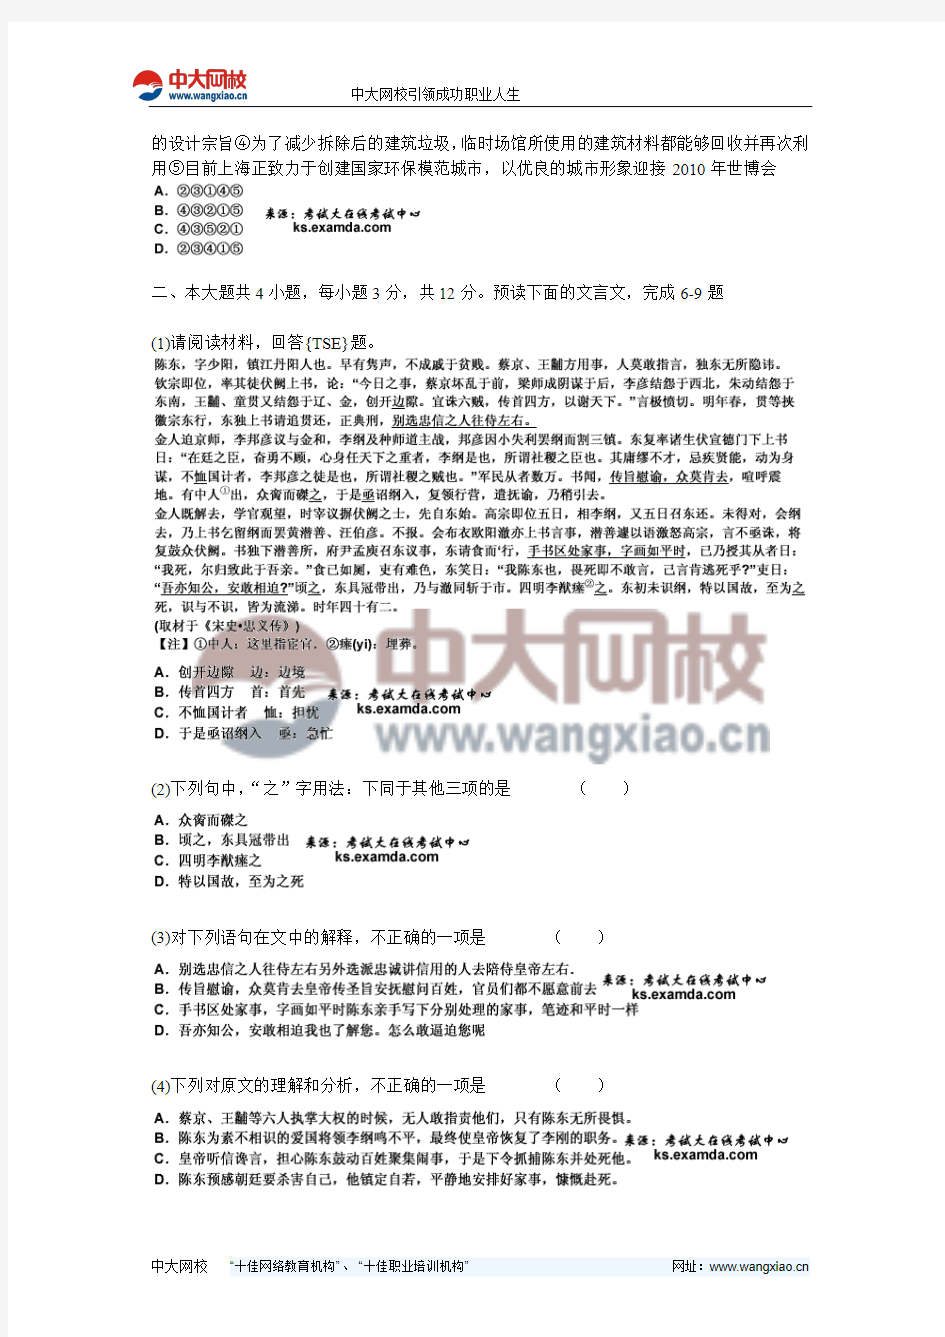 2011年北京市高考《语文》模拟测试试卷(4)-中大网校